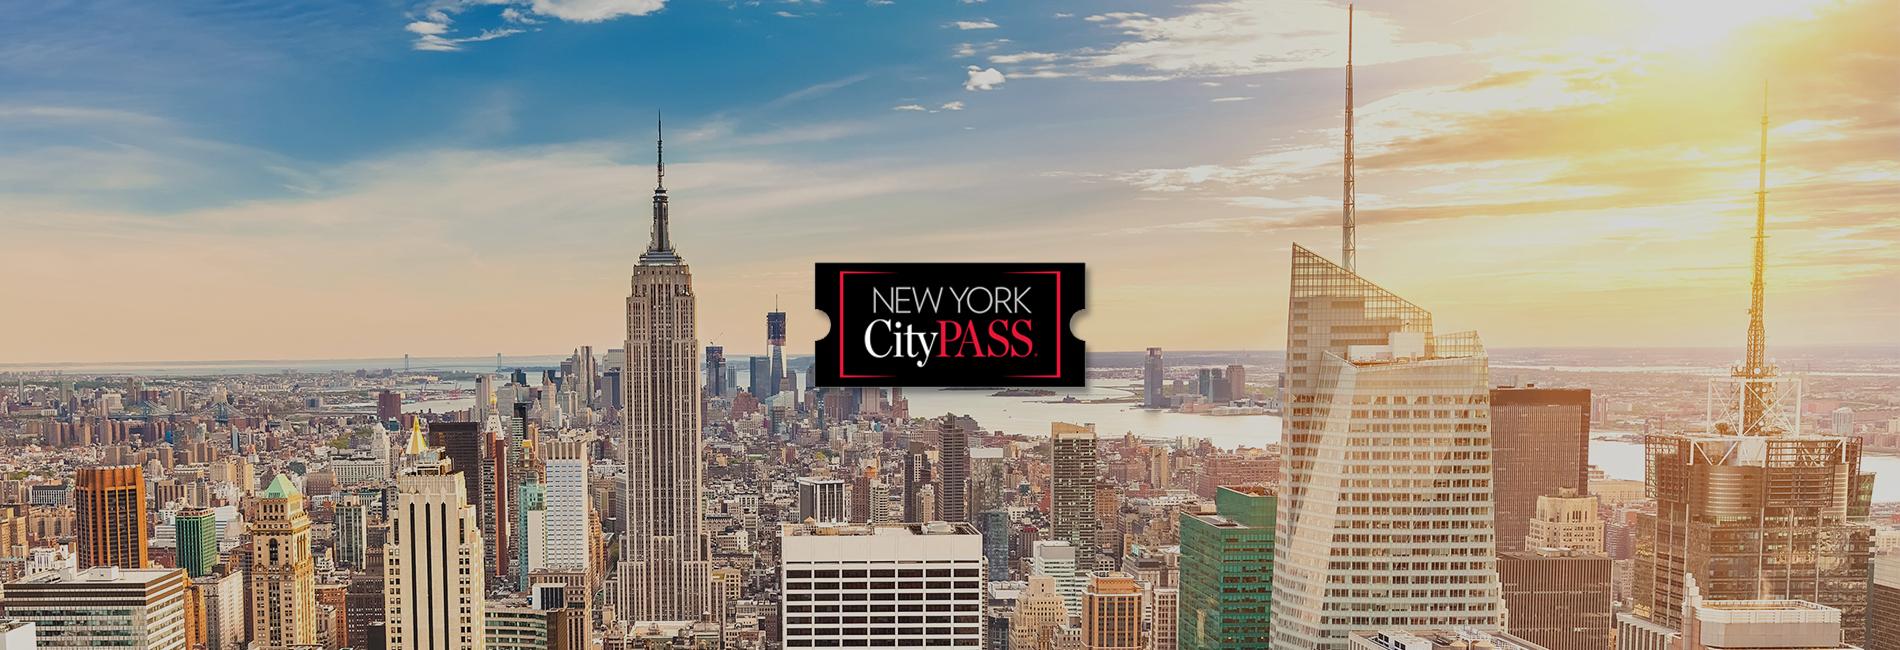 【【任選六大紐約必去景點】紐約城市通行證 New York CityPASS